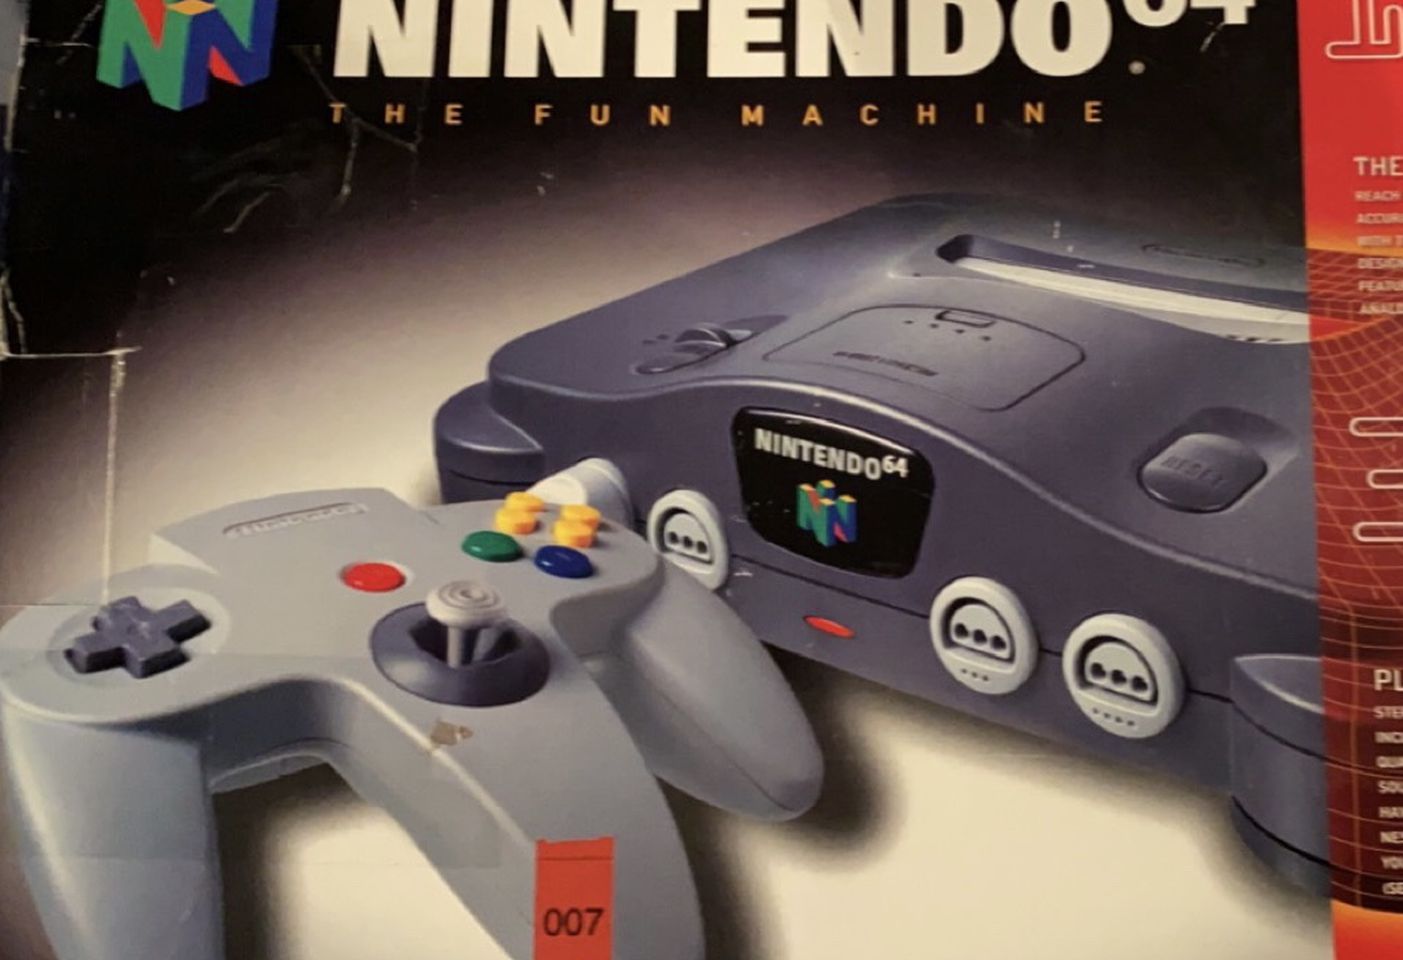 Nintendo 64 (N64)